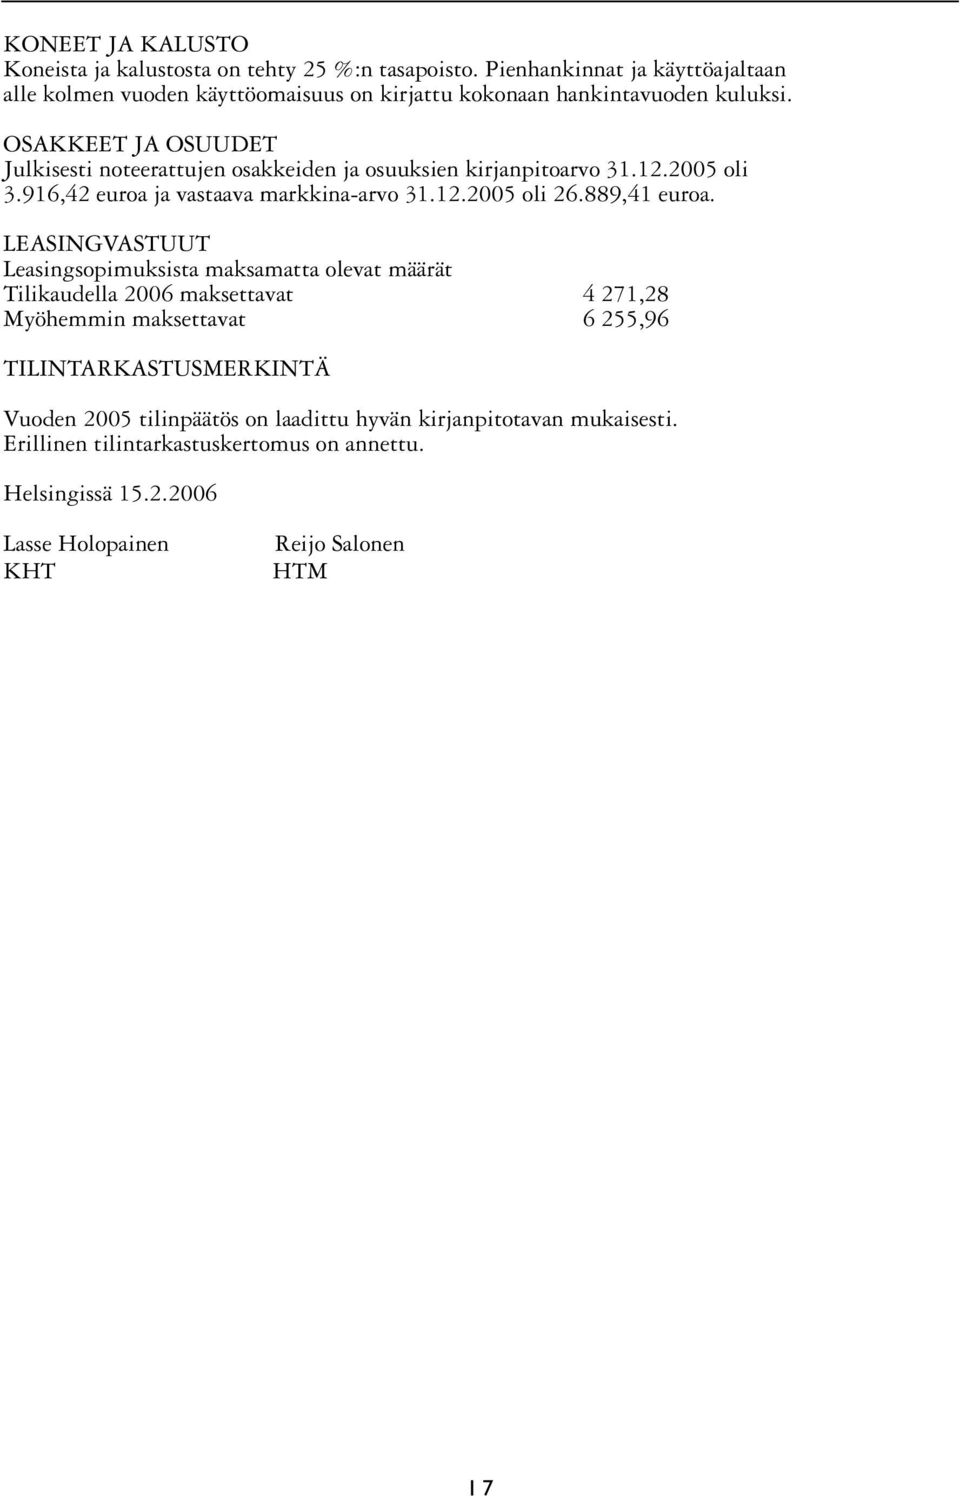 OSAKKEET JA OSUUDET Julkisesti noteerattujen osakkeiden ja osuuksien kirjanpitoarvo 31.12.2005 oli 3.916,42 euroa ja vastaava markkina-arvo 31.12.2005 oli 26.889,41 euroa.